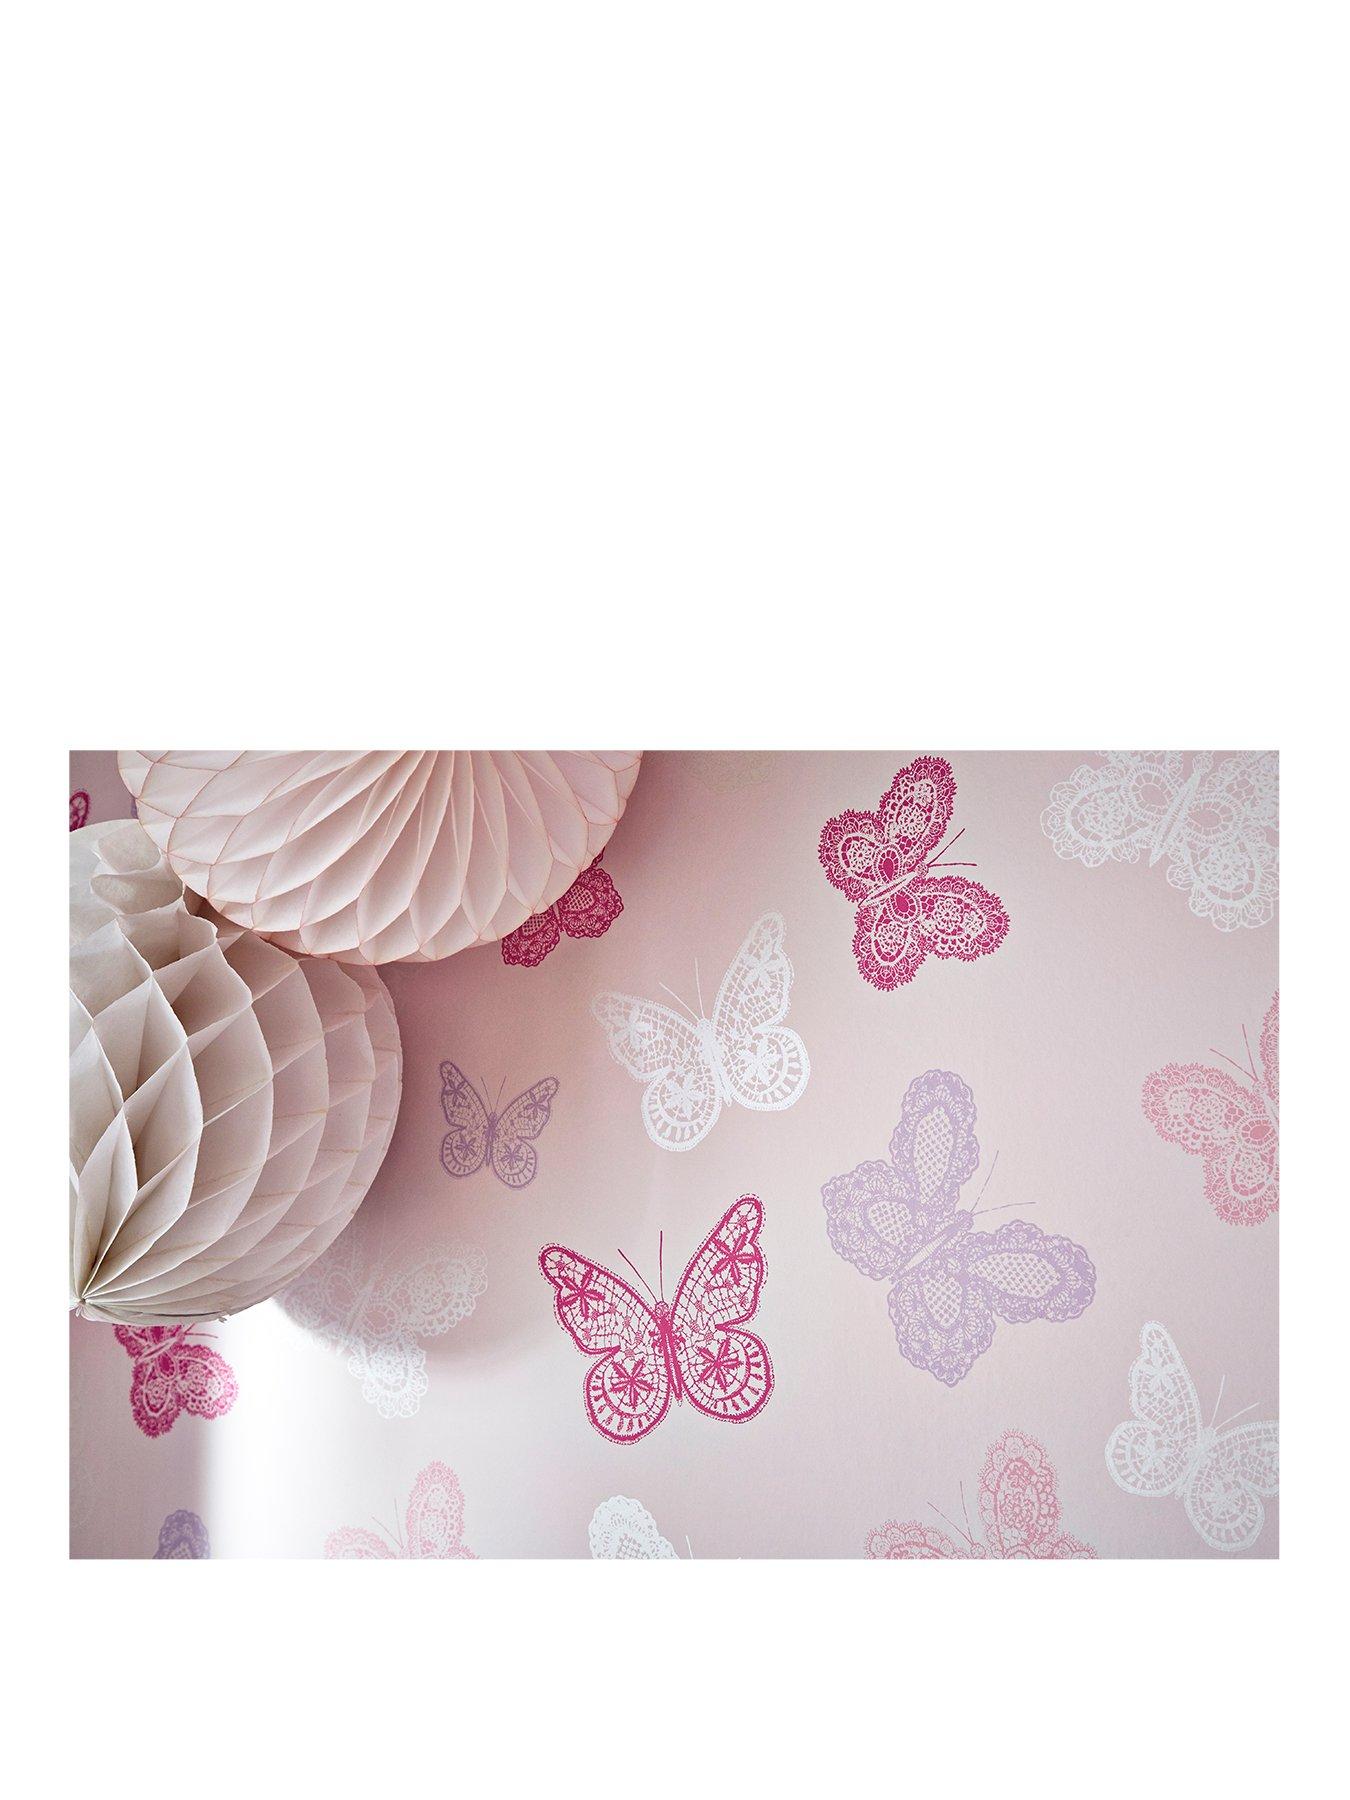 Purple Butterfly Wallpaper For Girls Bedroom - HD Wallpaper 